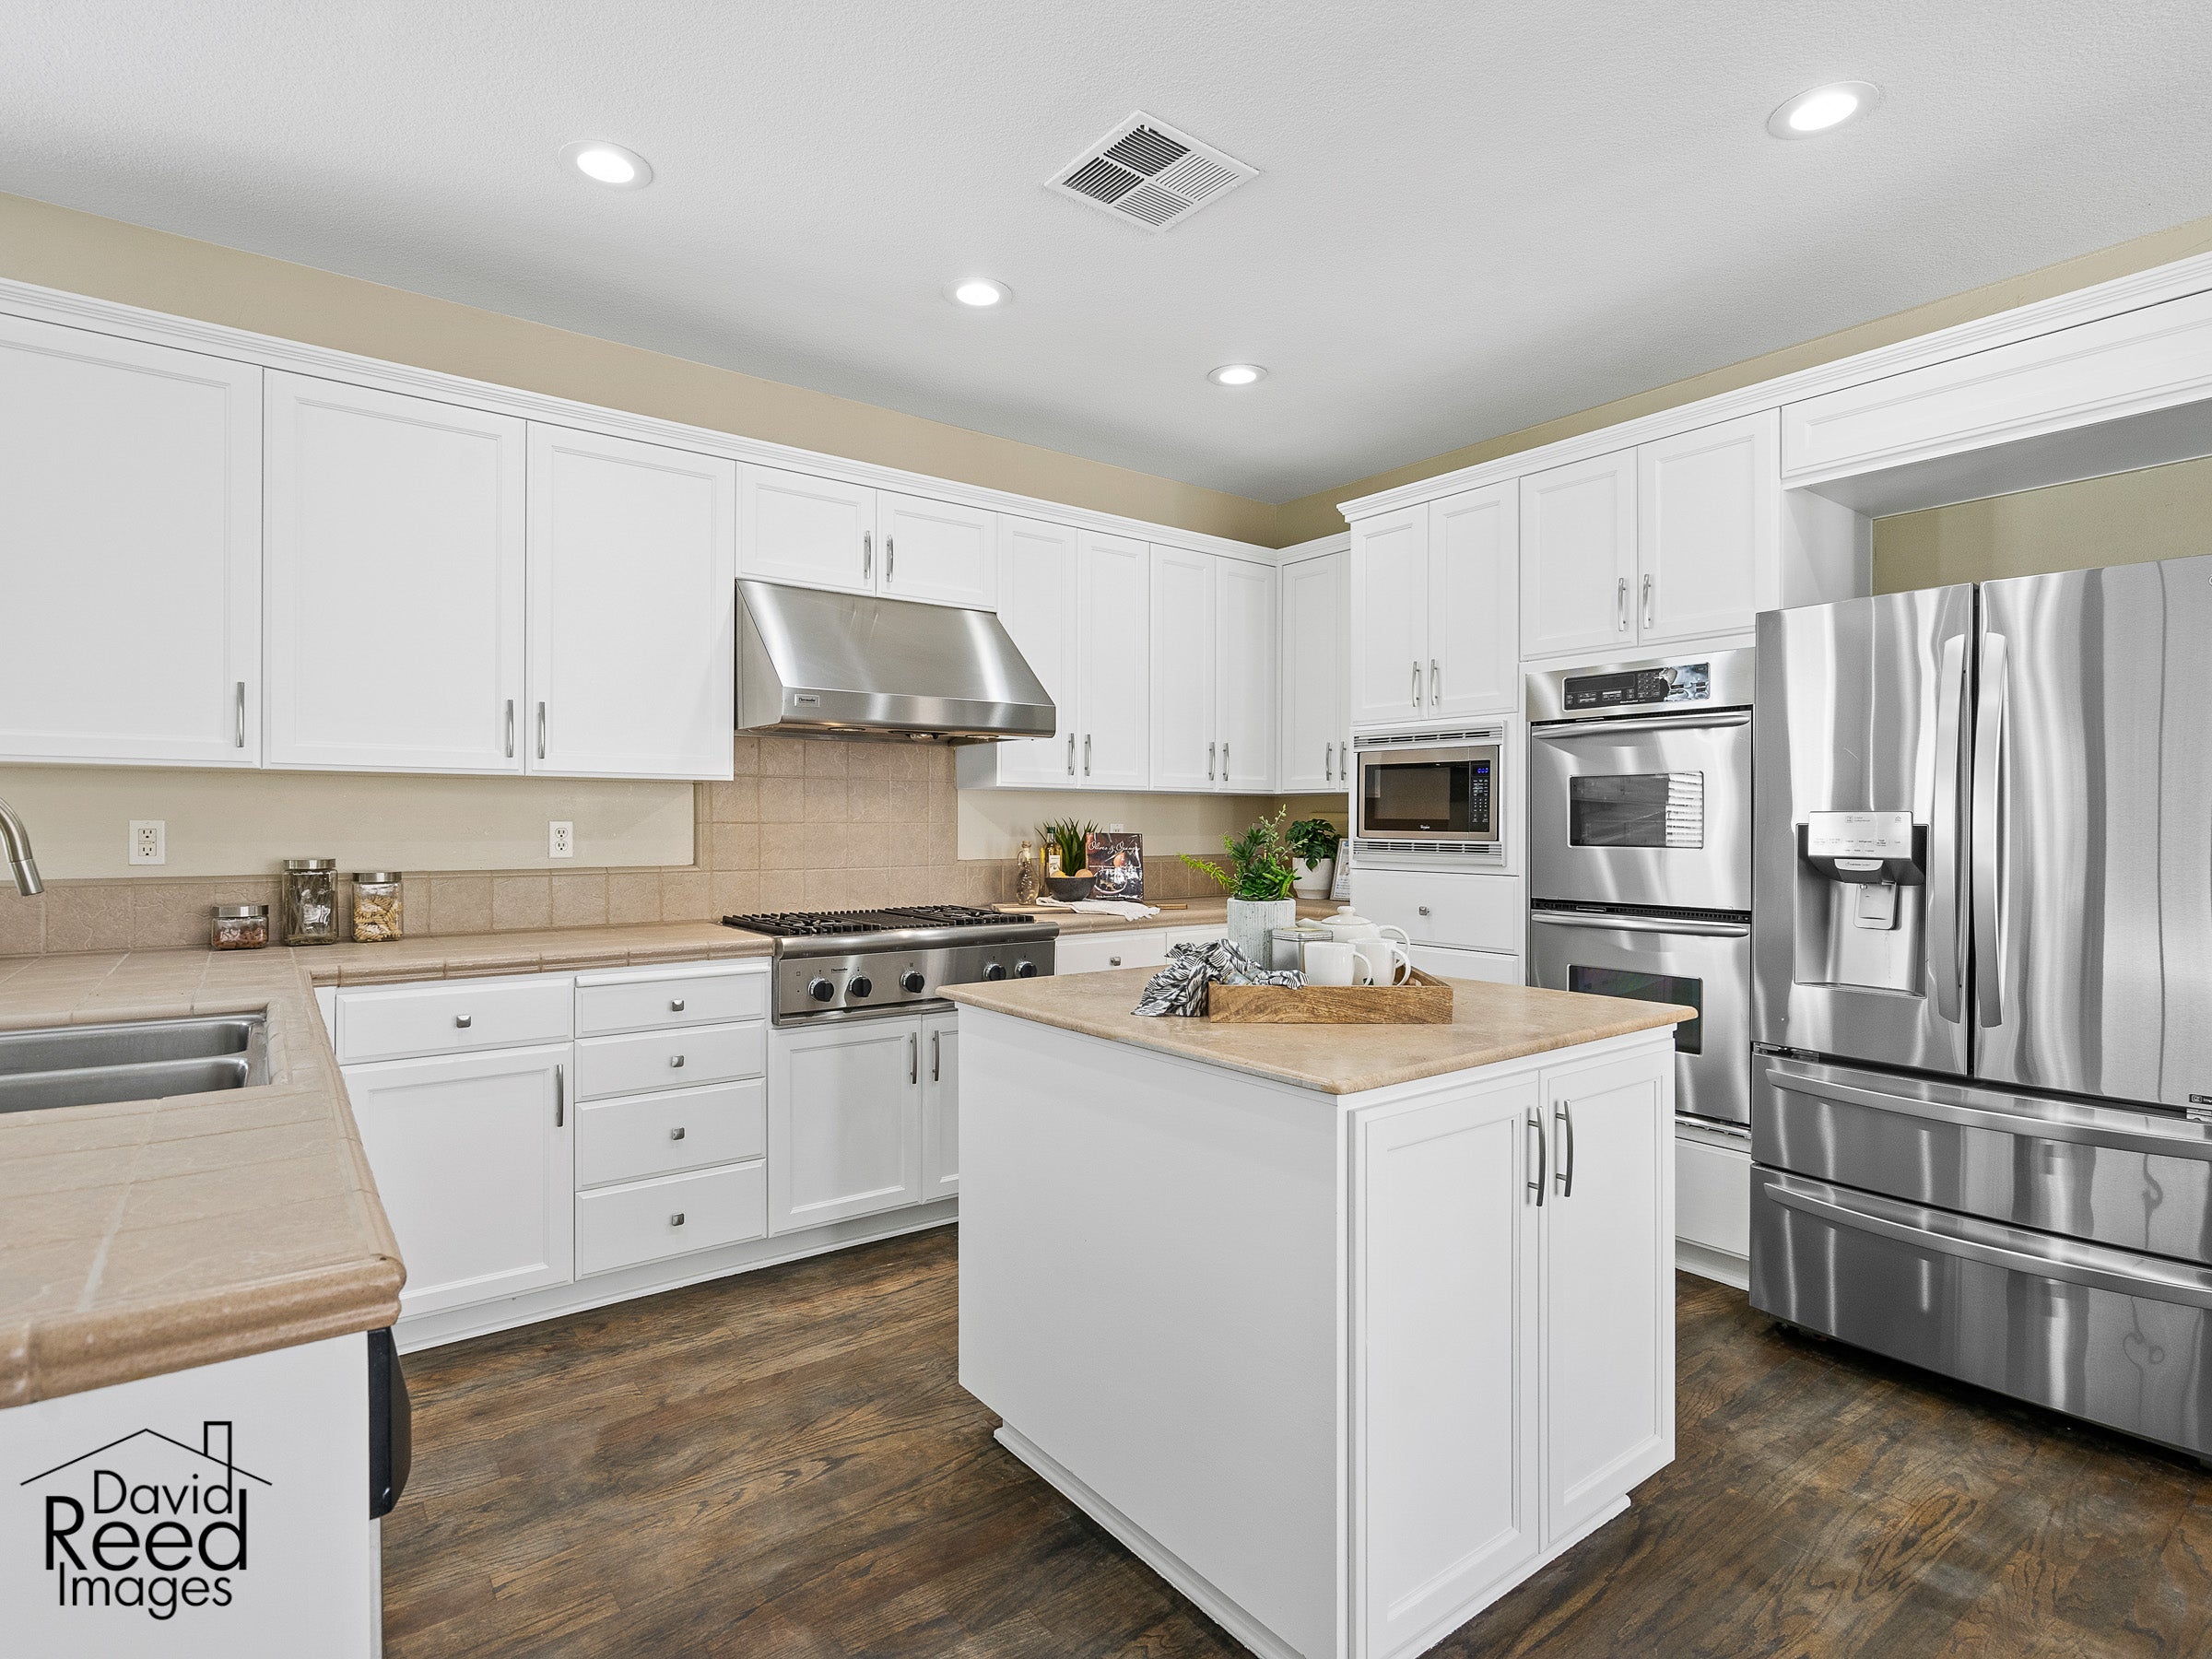 Premiere Home Staging Projects | Kitchen interior design idea - Village Green Dr, El Dorado Hills